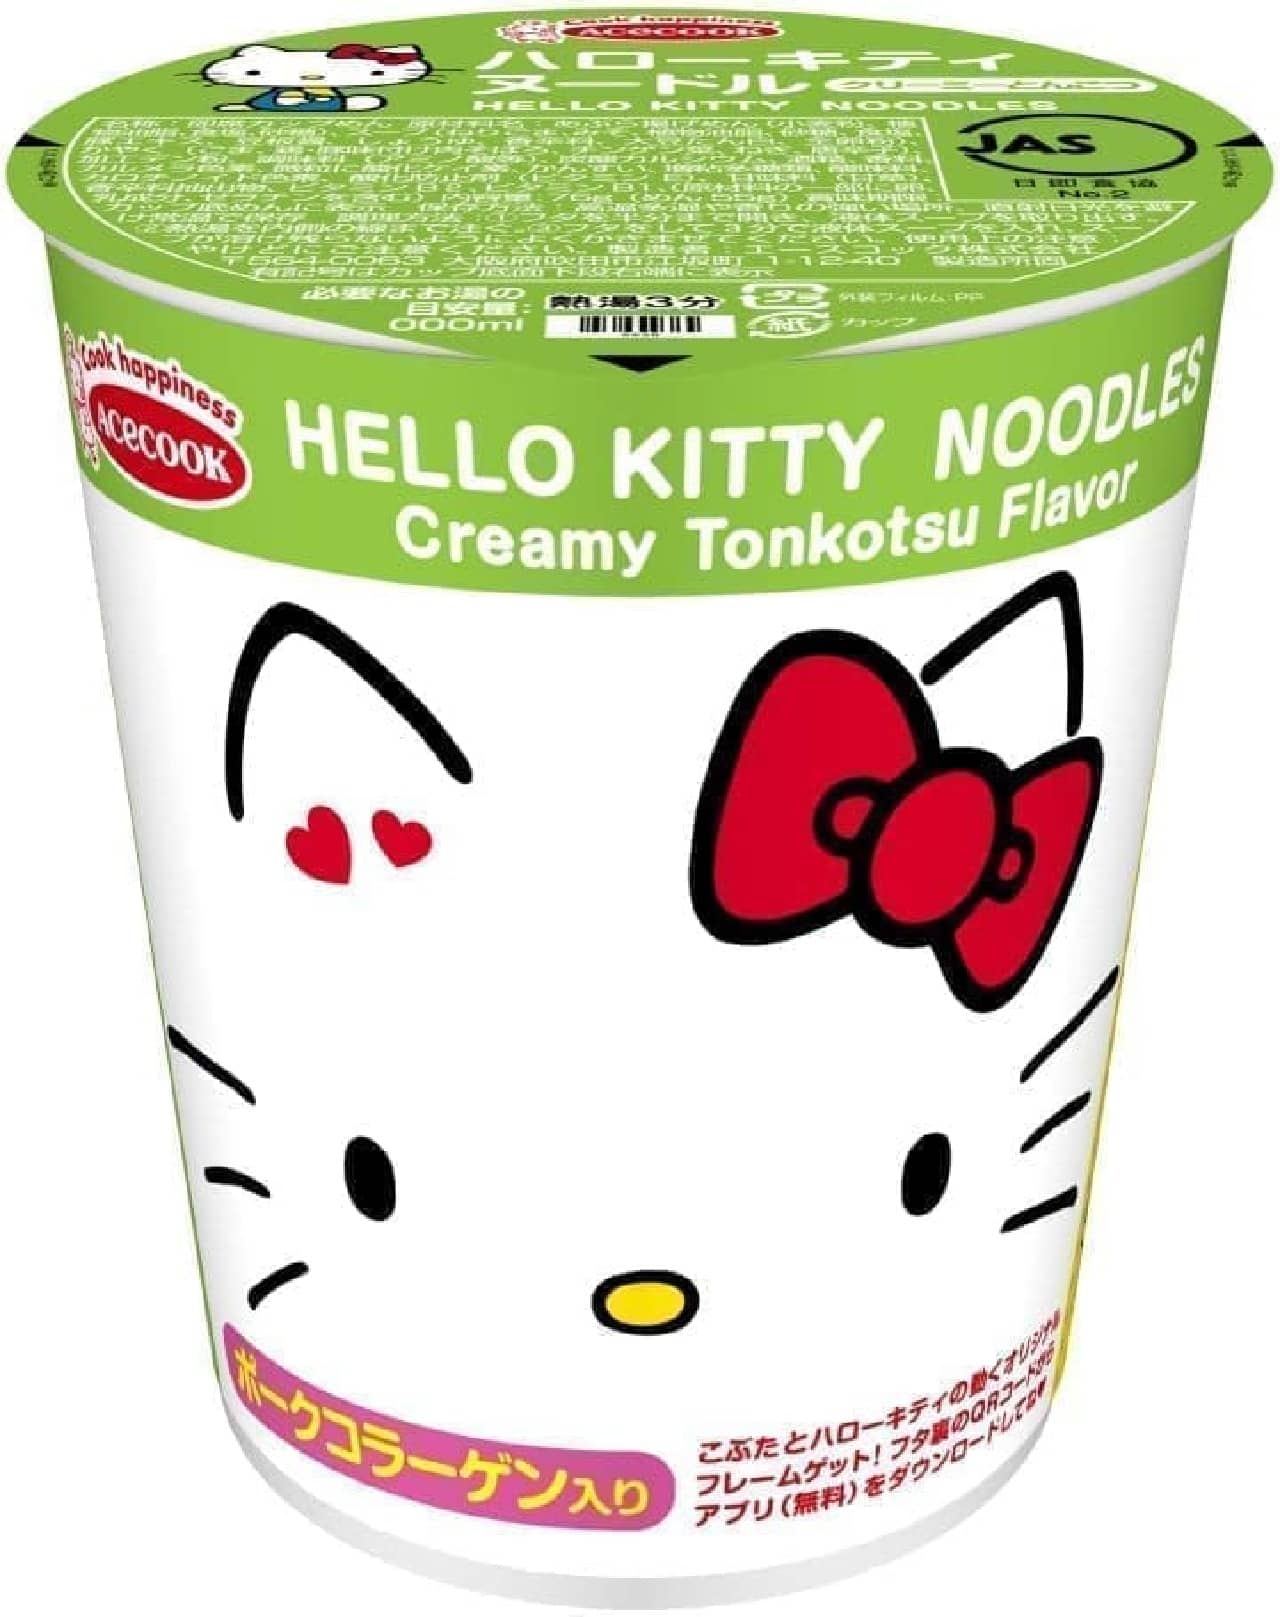 Acecook "Hello Kitty Noodle Creamy Tonkotsu"